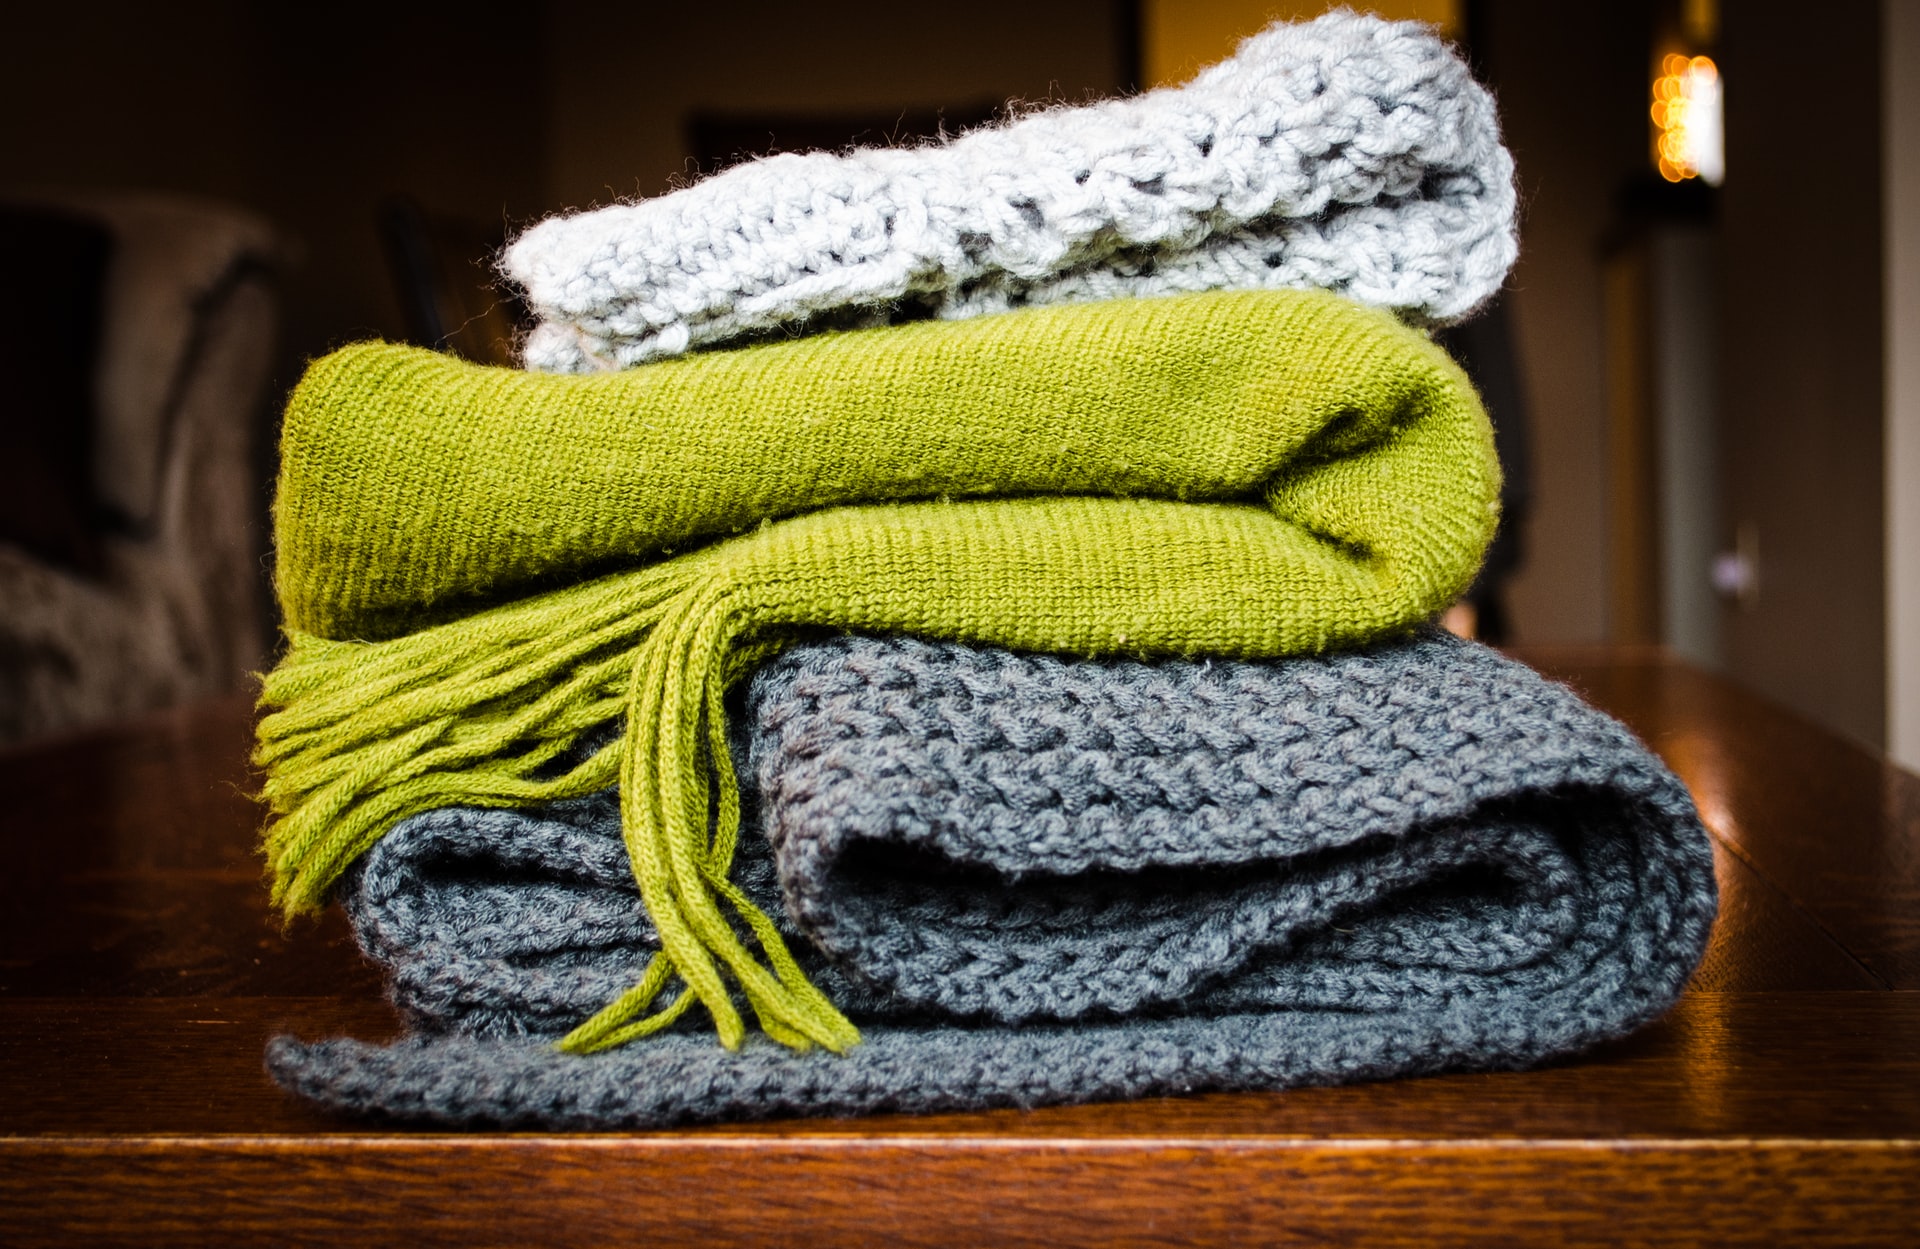 Tekstiilituholaisten torjumiseksi kannattaa erityisesti villavaatteet säilyttää huolellisesti ja ravistella ja tuulettaa tekstiilejä.